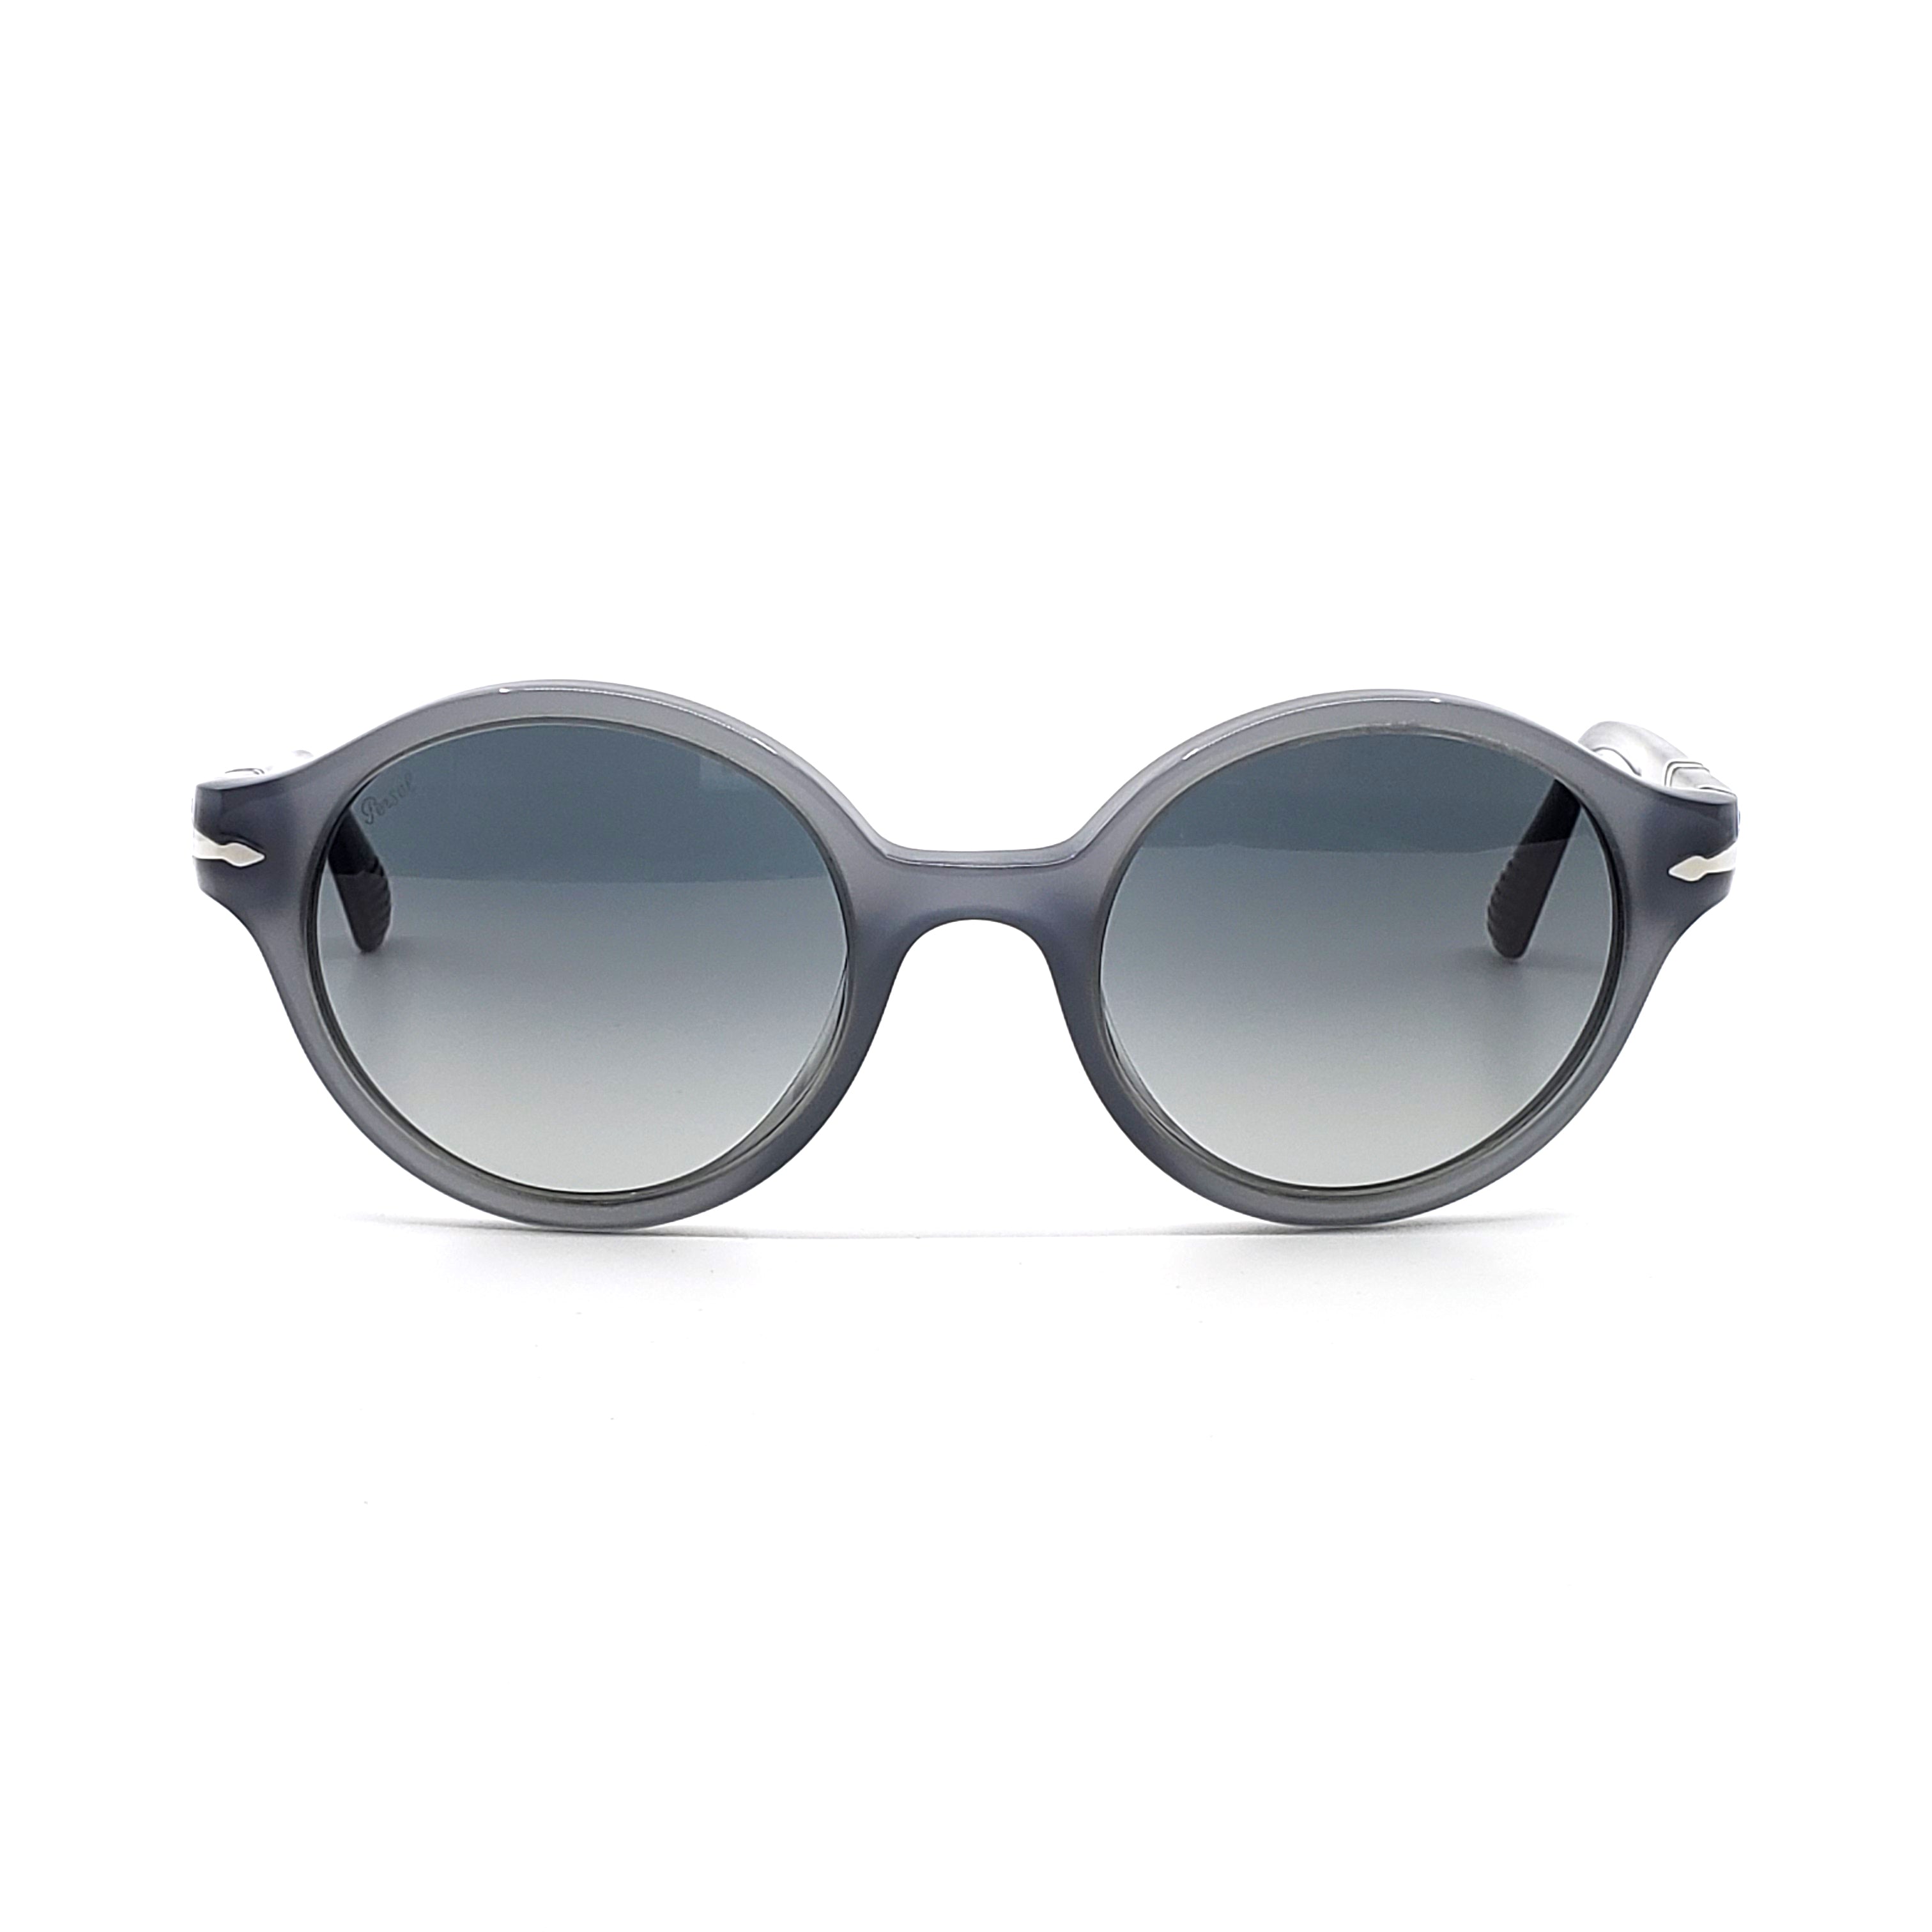 Persol Sunglasses - Film Noir Edition - PO3098S